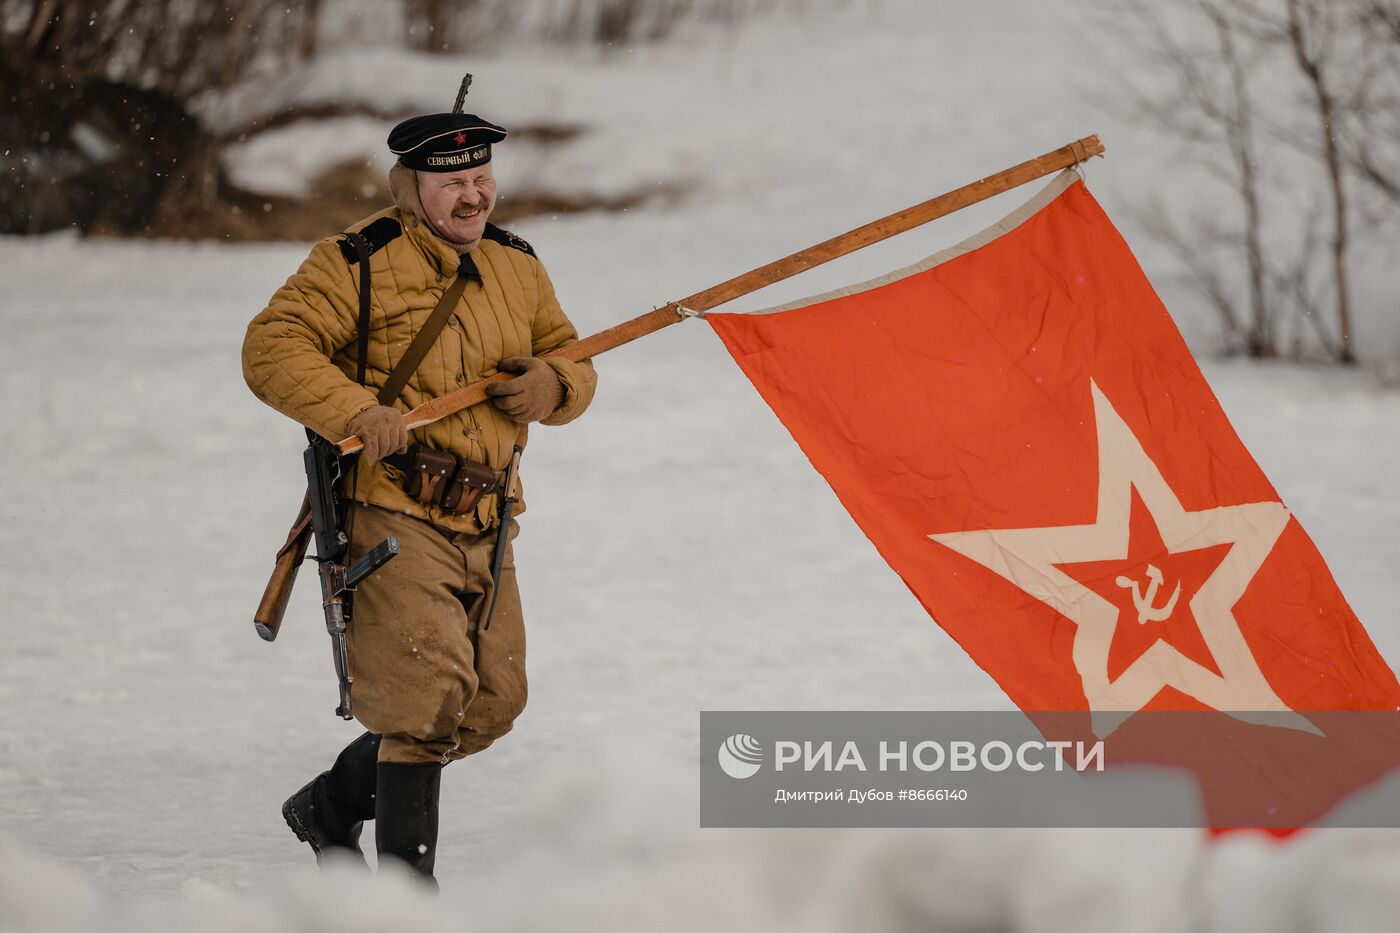 Историческая реконструкция сражения времен Великой Отечественной войны 